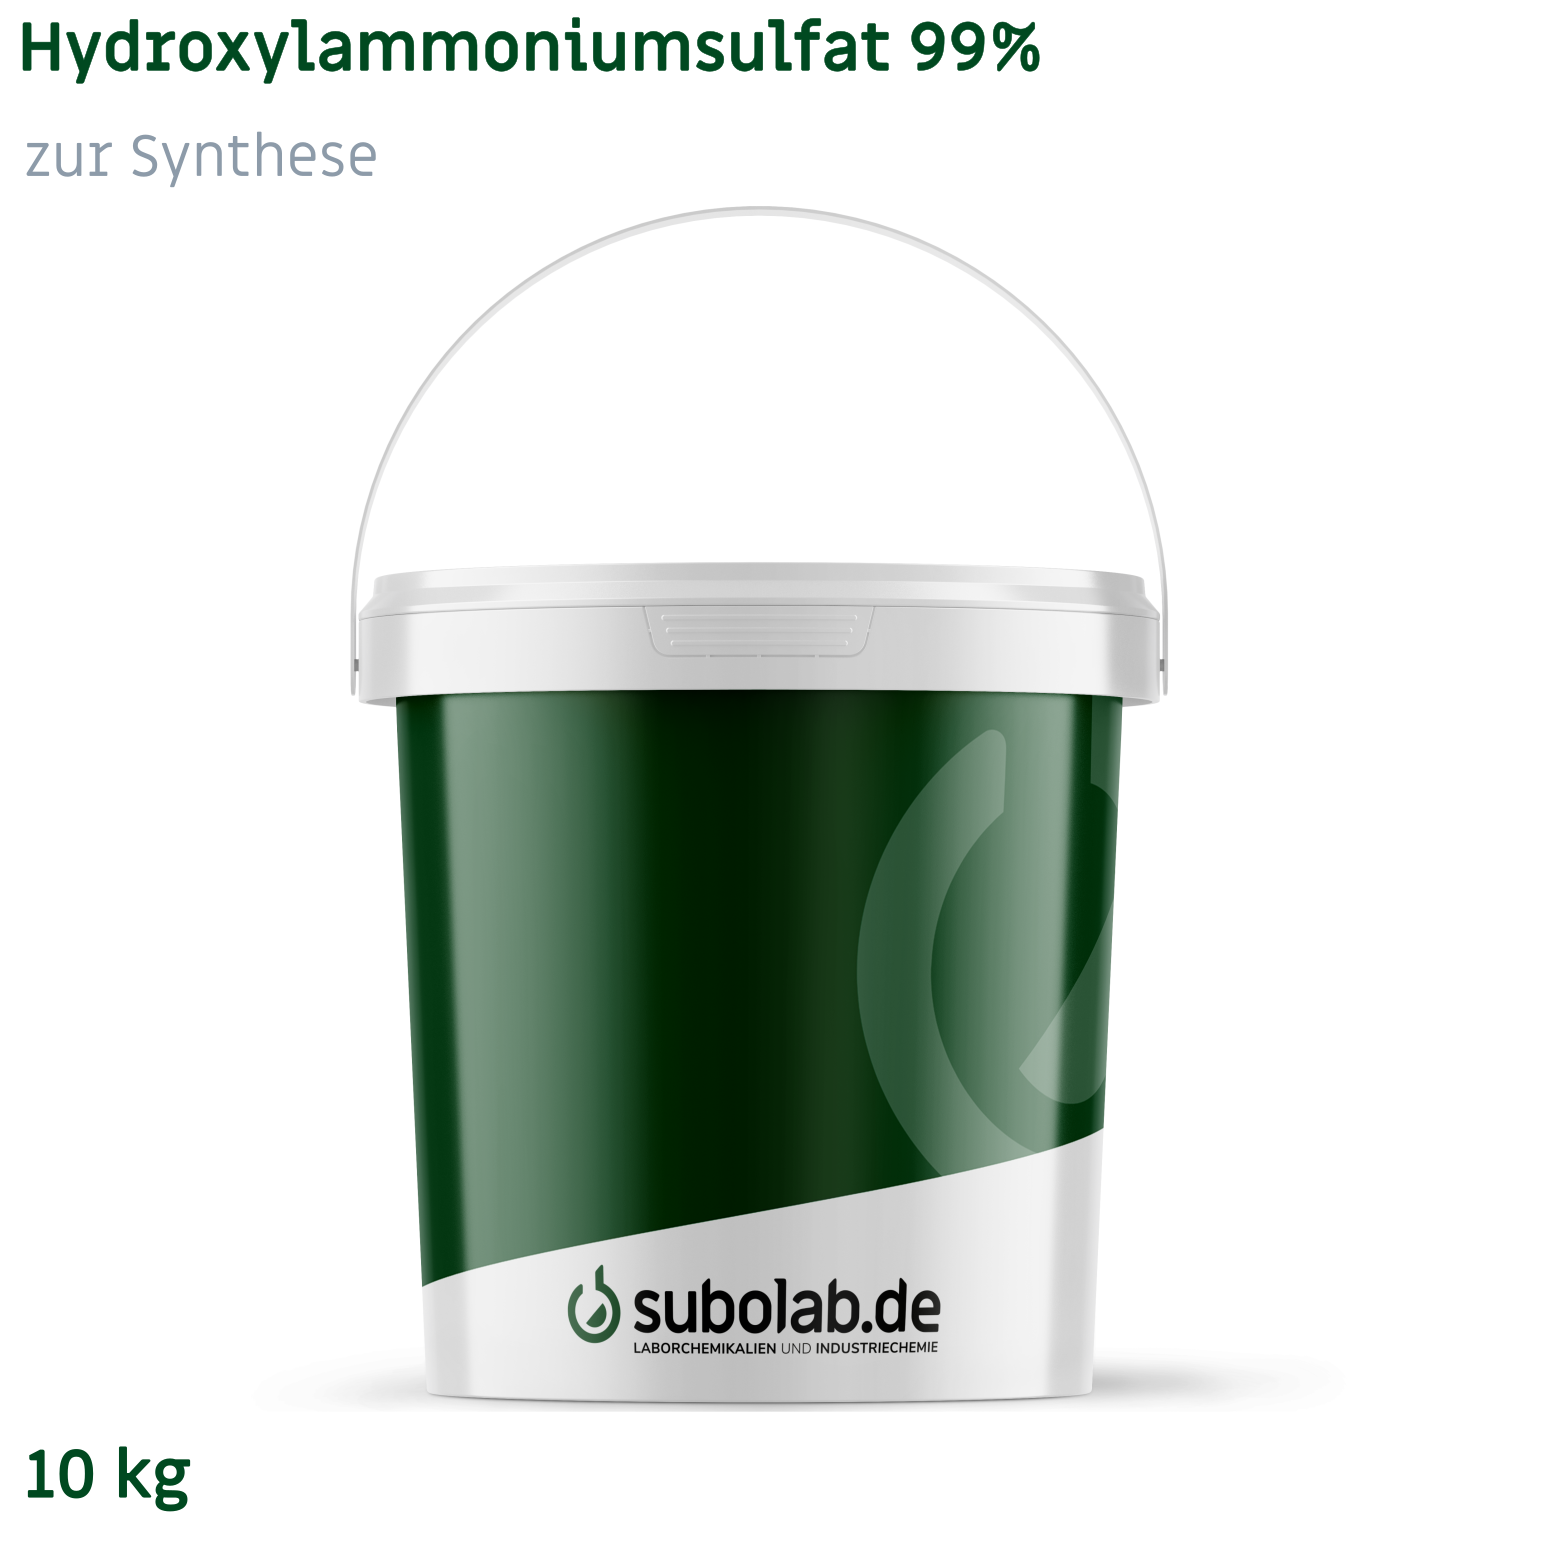 Bild von Hydroxylammoniumsulfat 99% zur Synthese (10 kg)